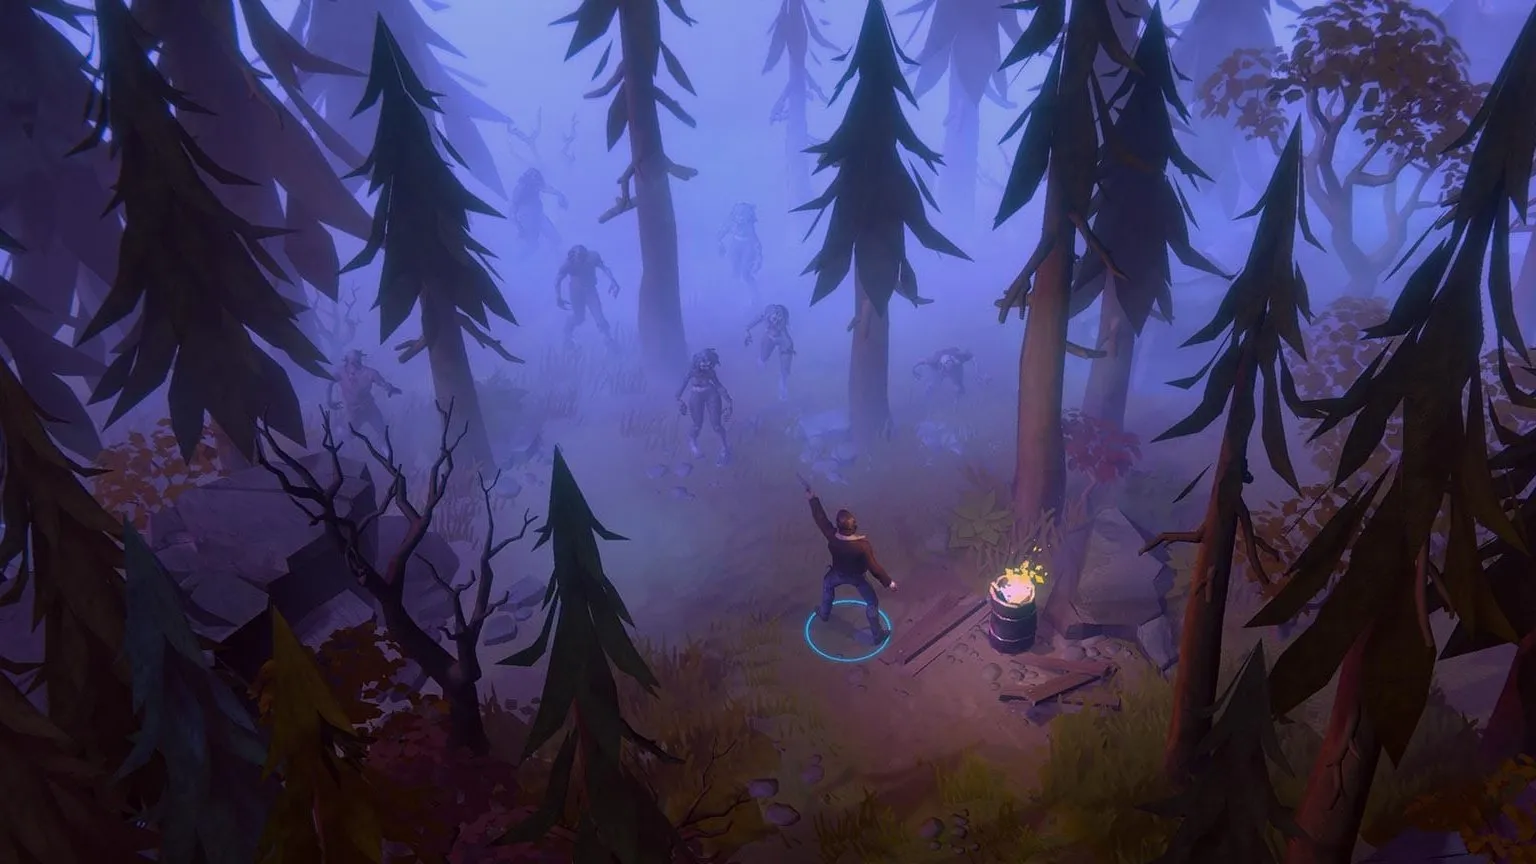 Hình ảnh tĩnh trò chơi cho thấy mọi người xung quanh lửa trại vào ban đêm trong một khu rừng sương mù. Anh ta nhắm súng vào một nhóm thây ma đang trồi lên từ những cái cây.